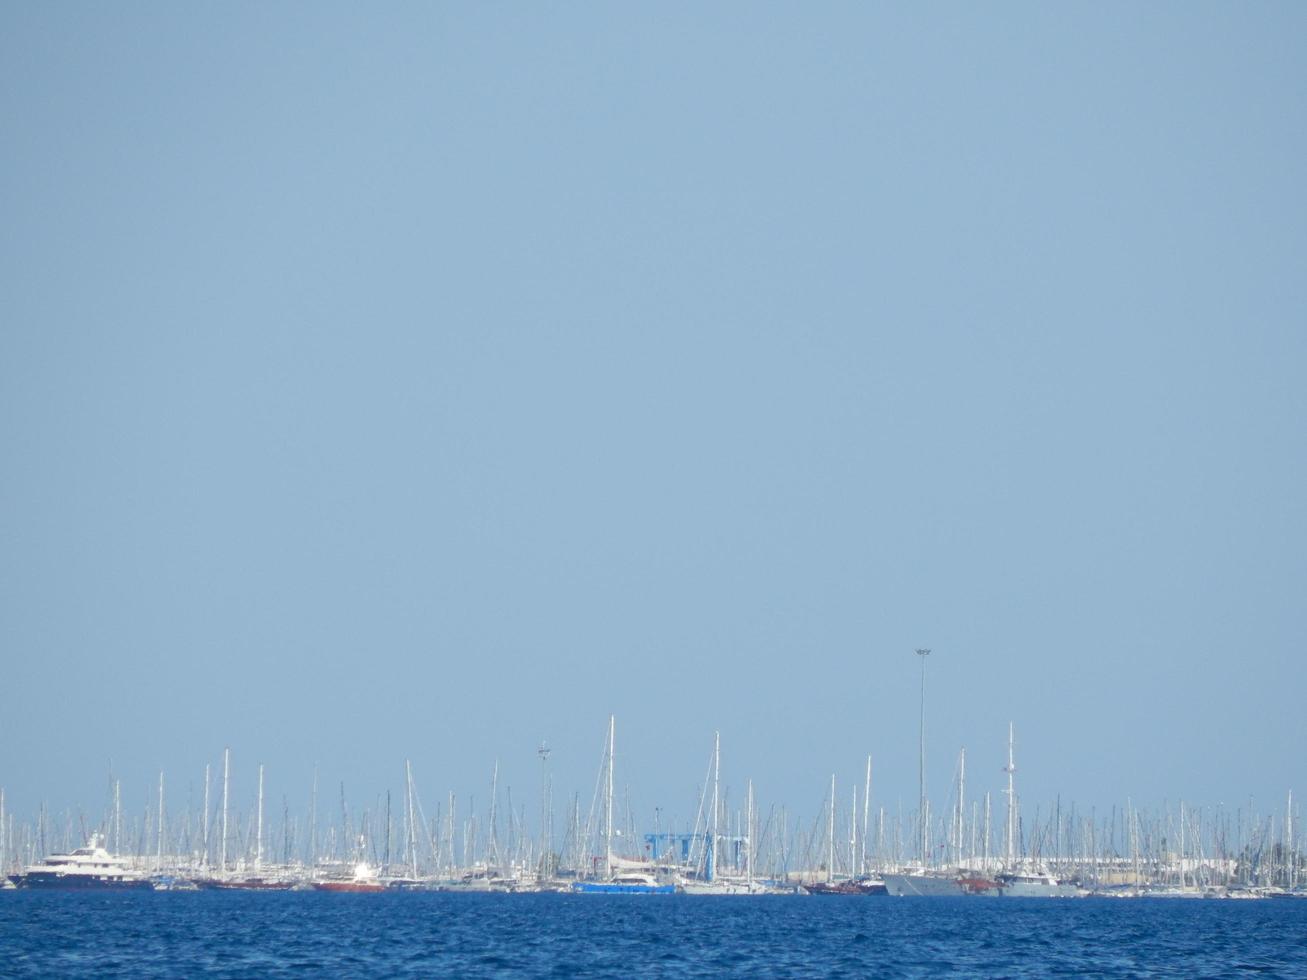 Marina de plaisance de Marmaris en turquie station balnéaire sur la mer Égée photo